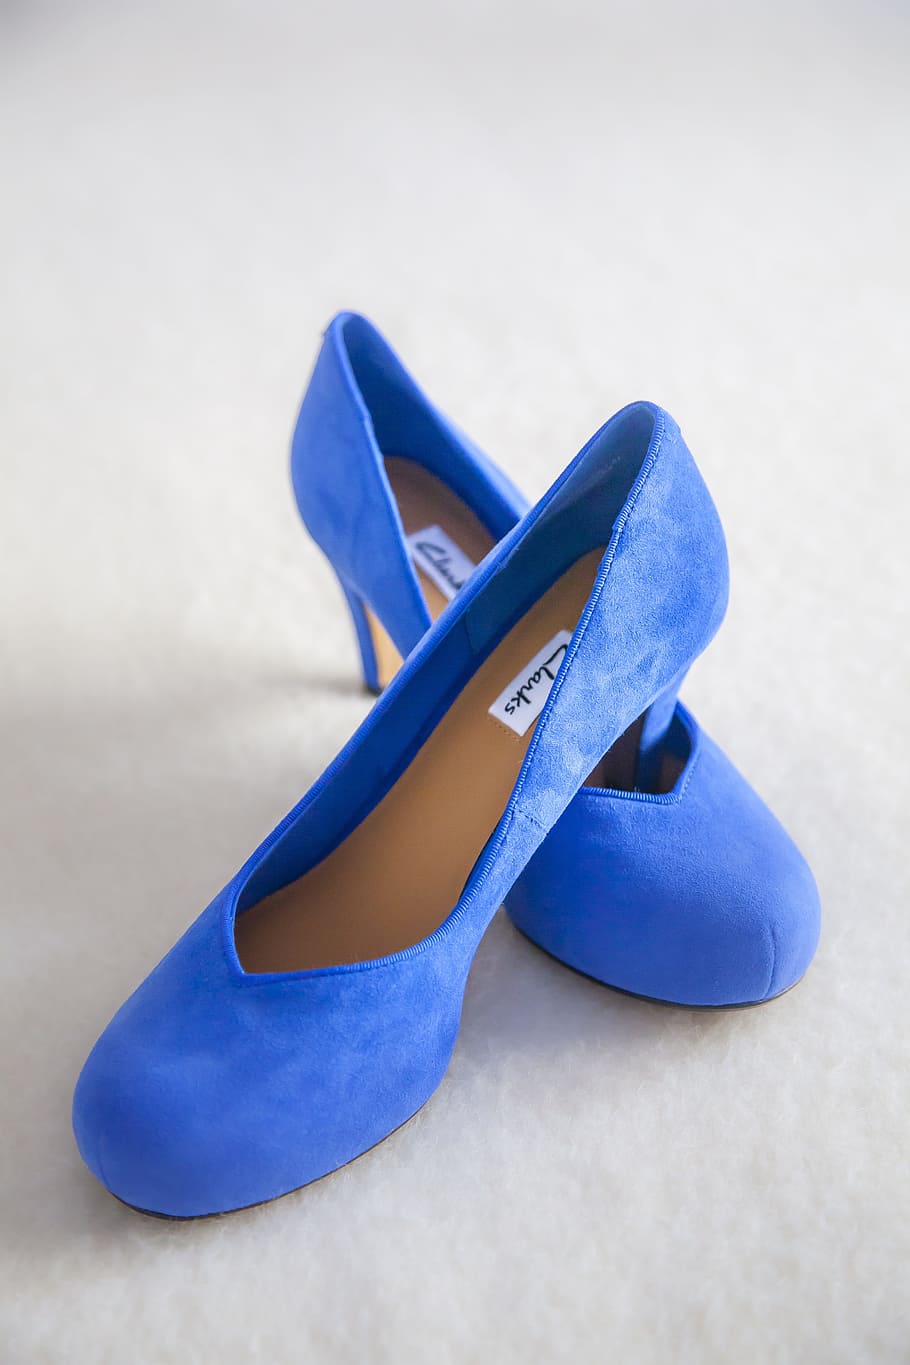 pair, blue, suede stilettos, white, surface, shoe, color, heel, fine, marriage